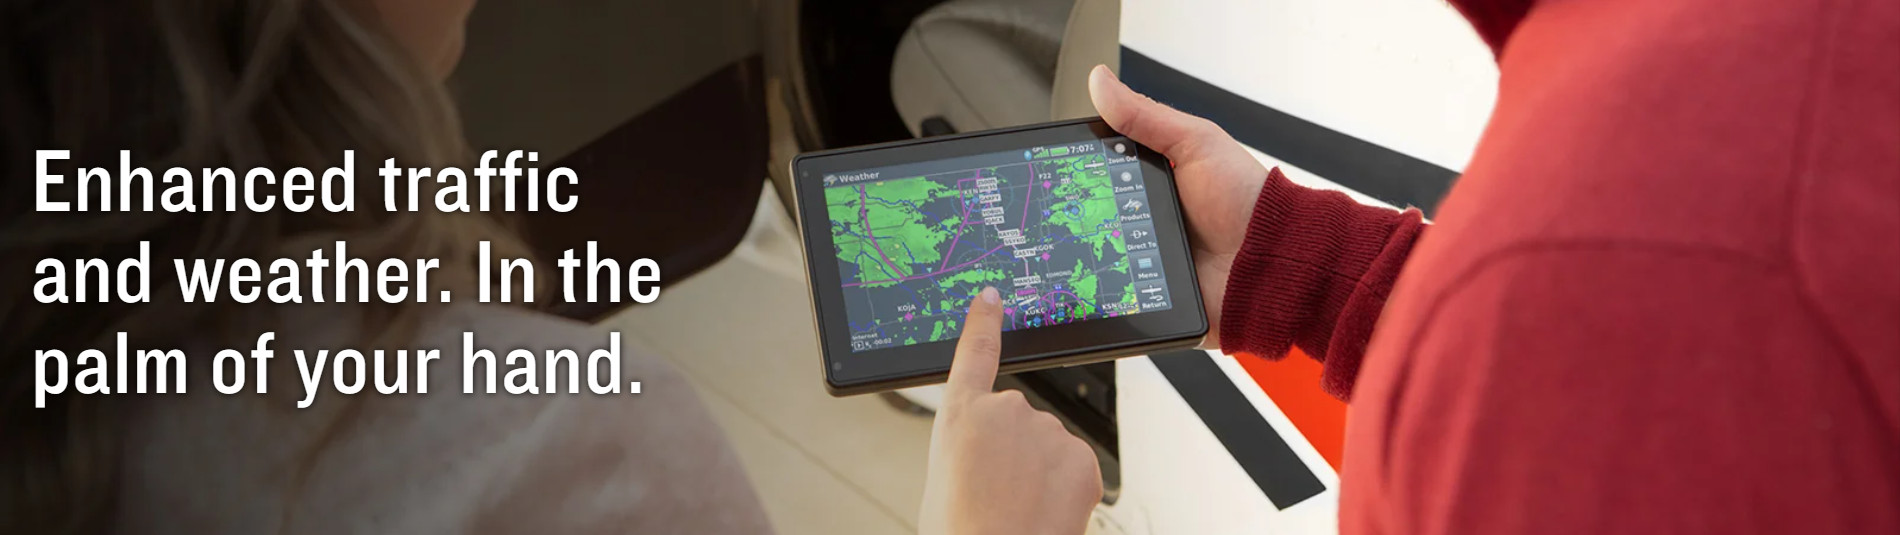 Garmin aera 760 Touchscreen Aviation GPS Portable